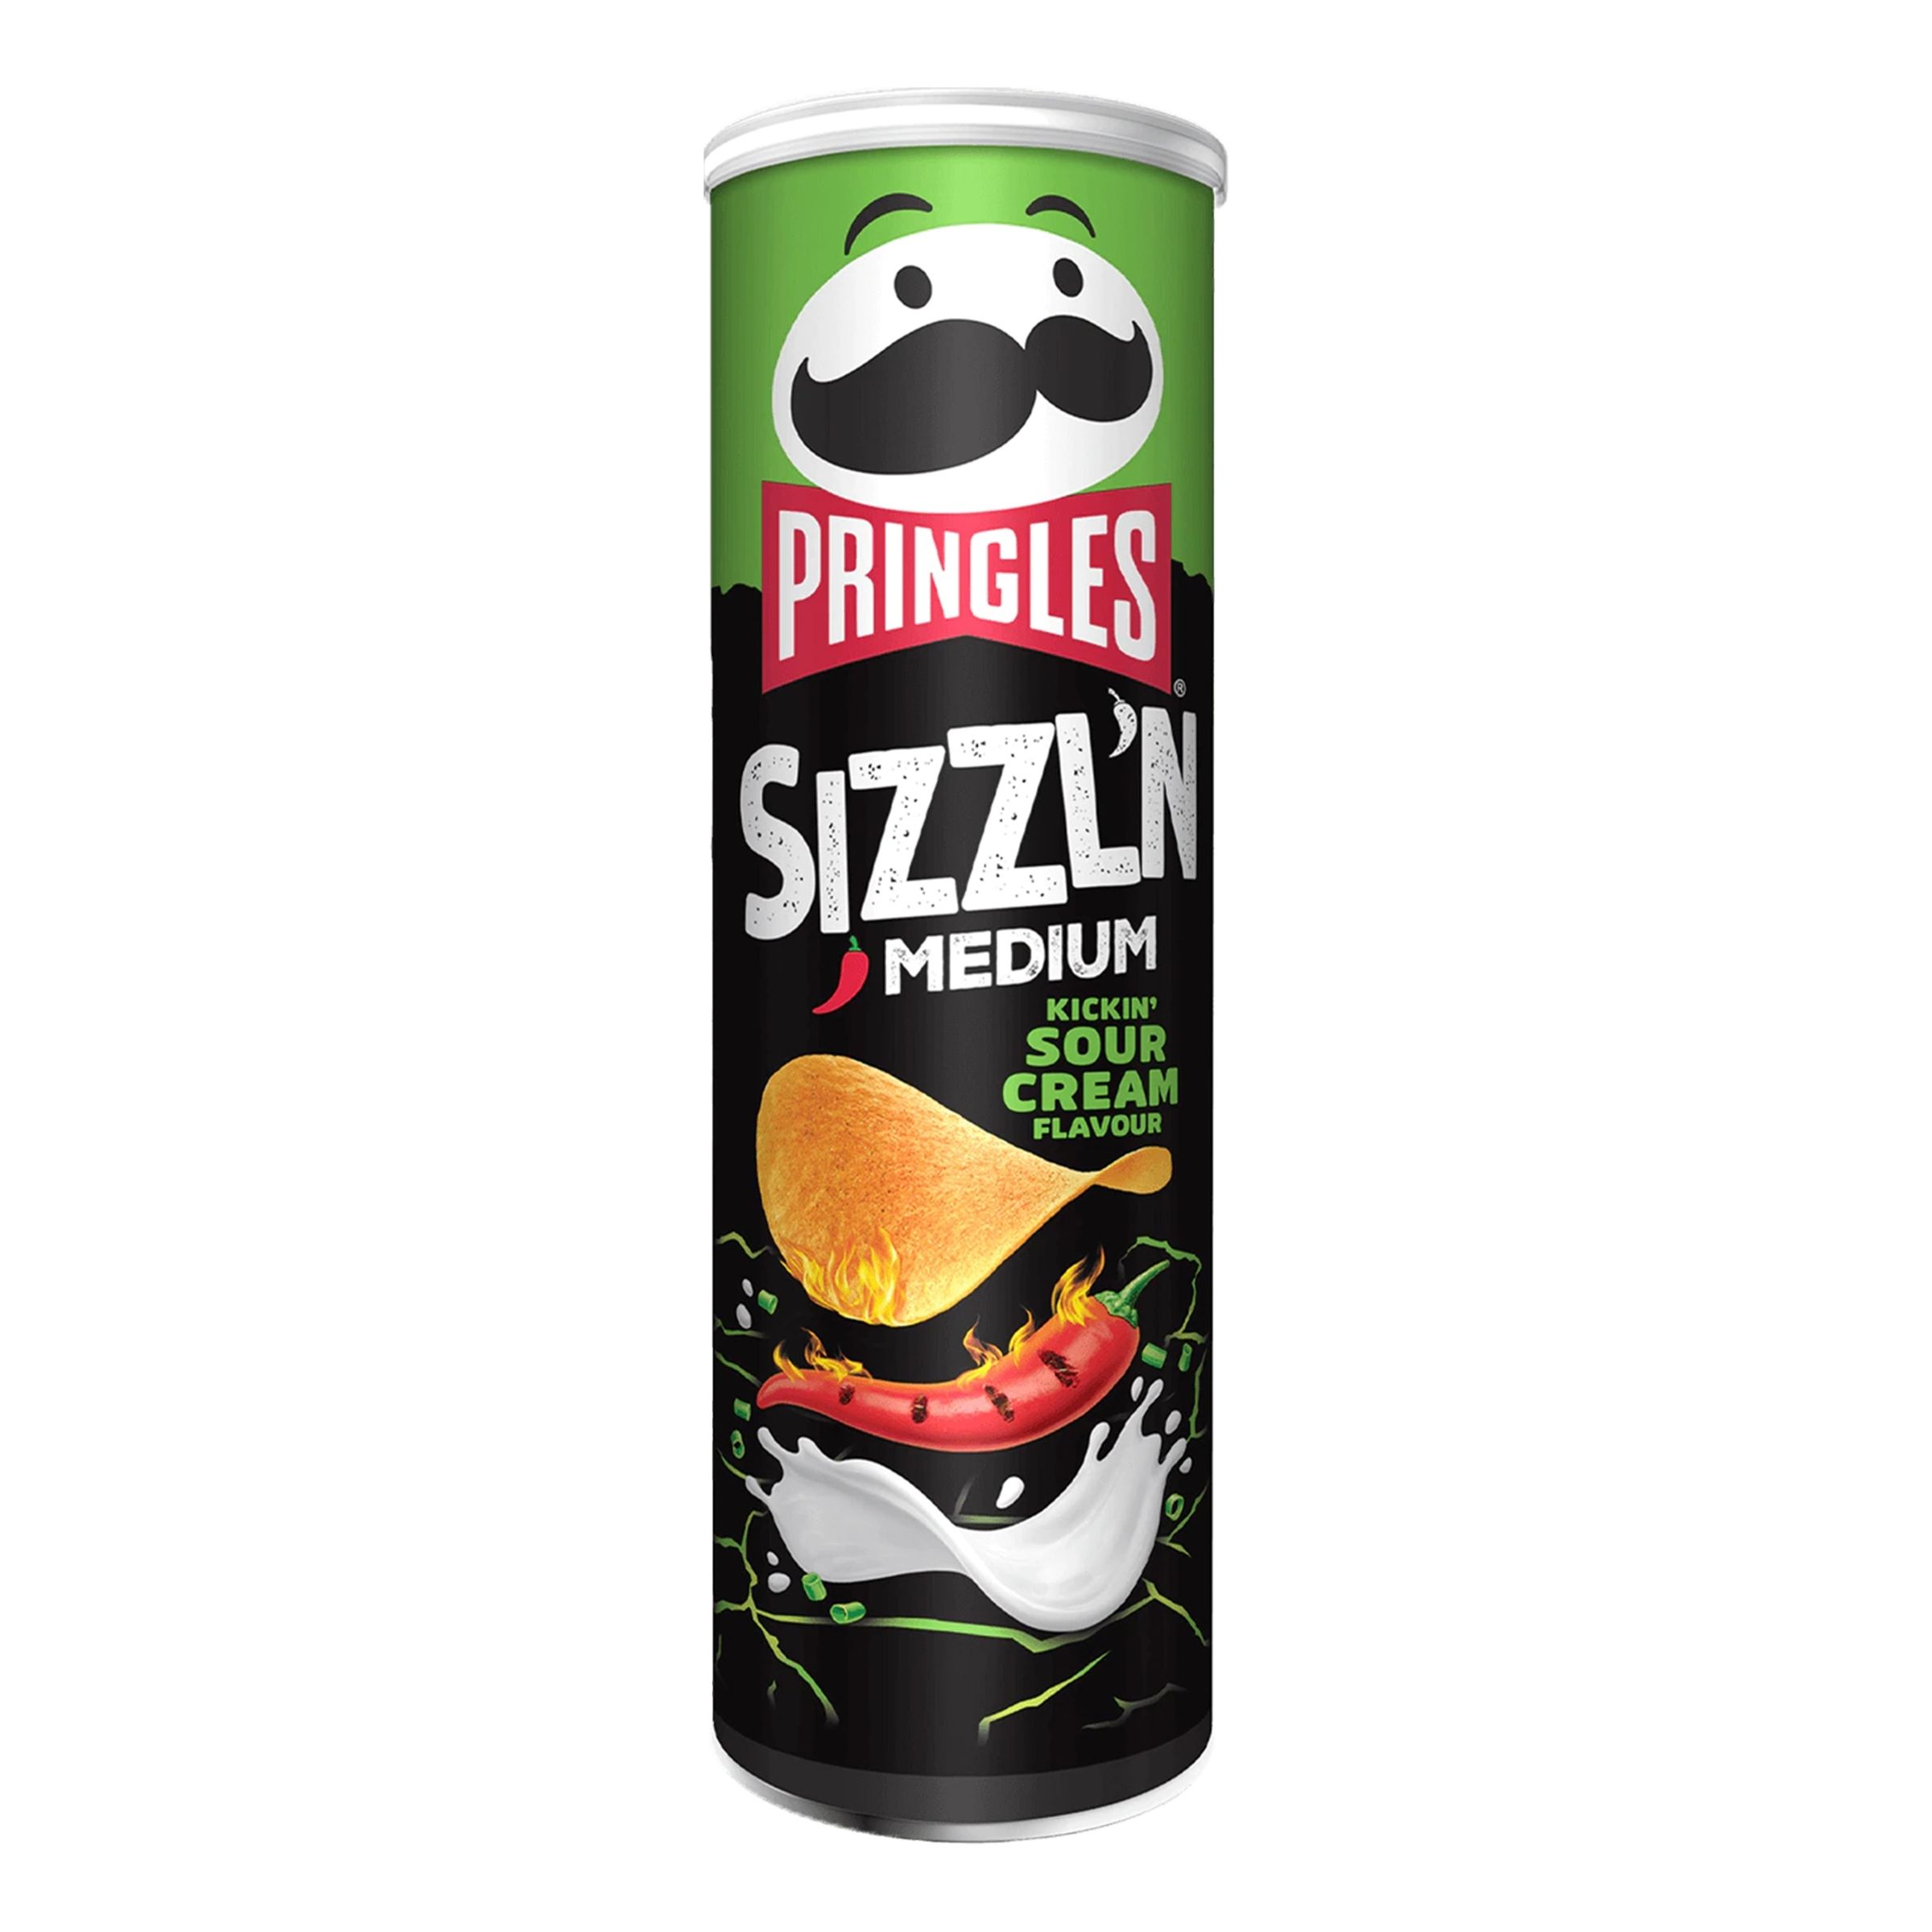 Pringles Sizzl